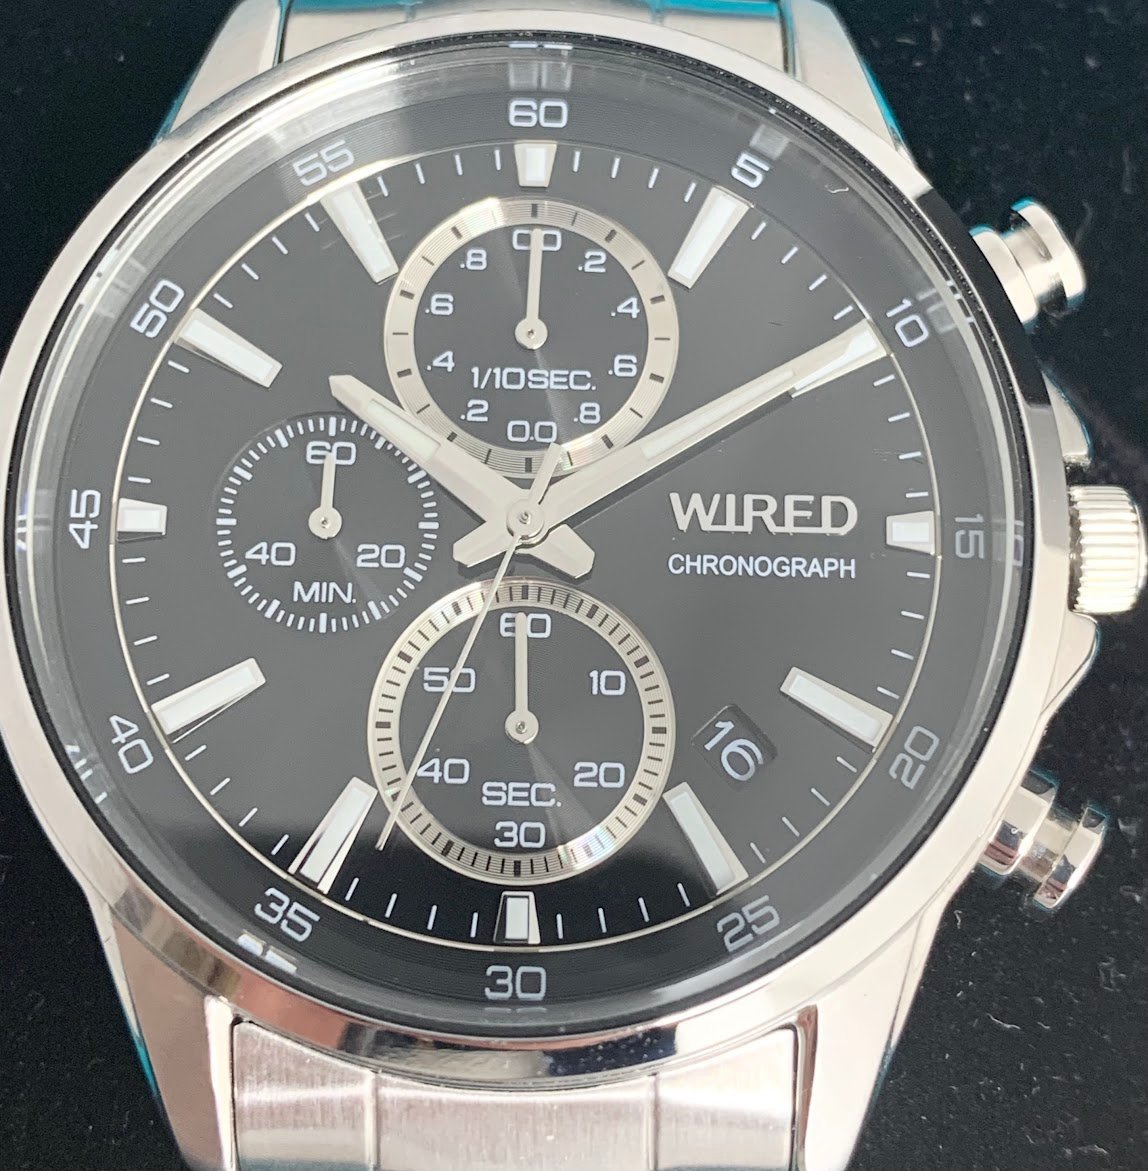 ■セイコー SEIKO ワイアード WIRED クロノグラフ メンズ腕時計 ブラック 人気モデル VD57-KND0 AGAT424